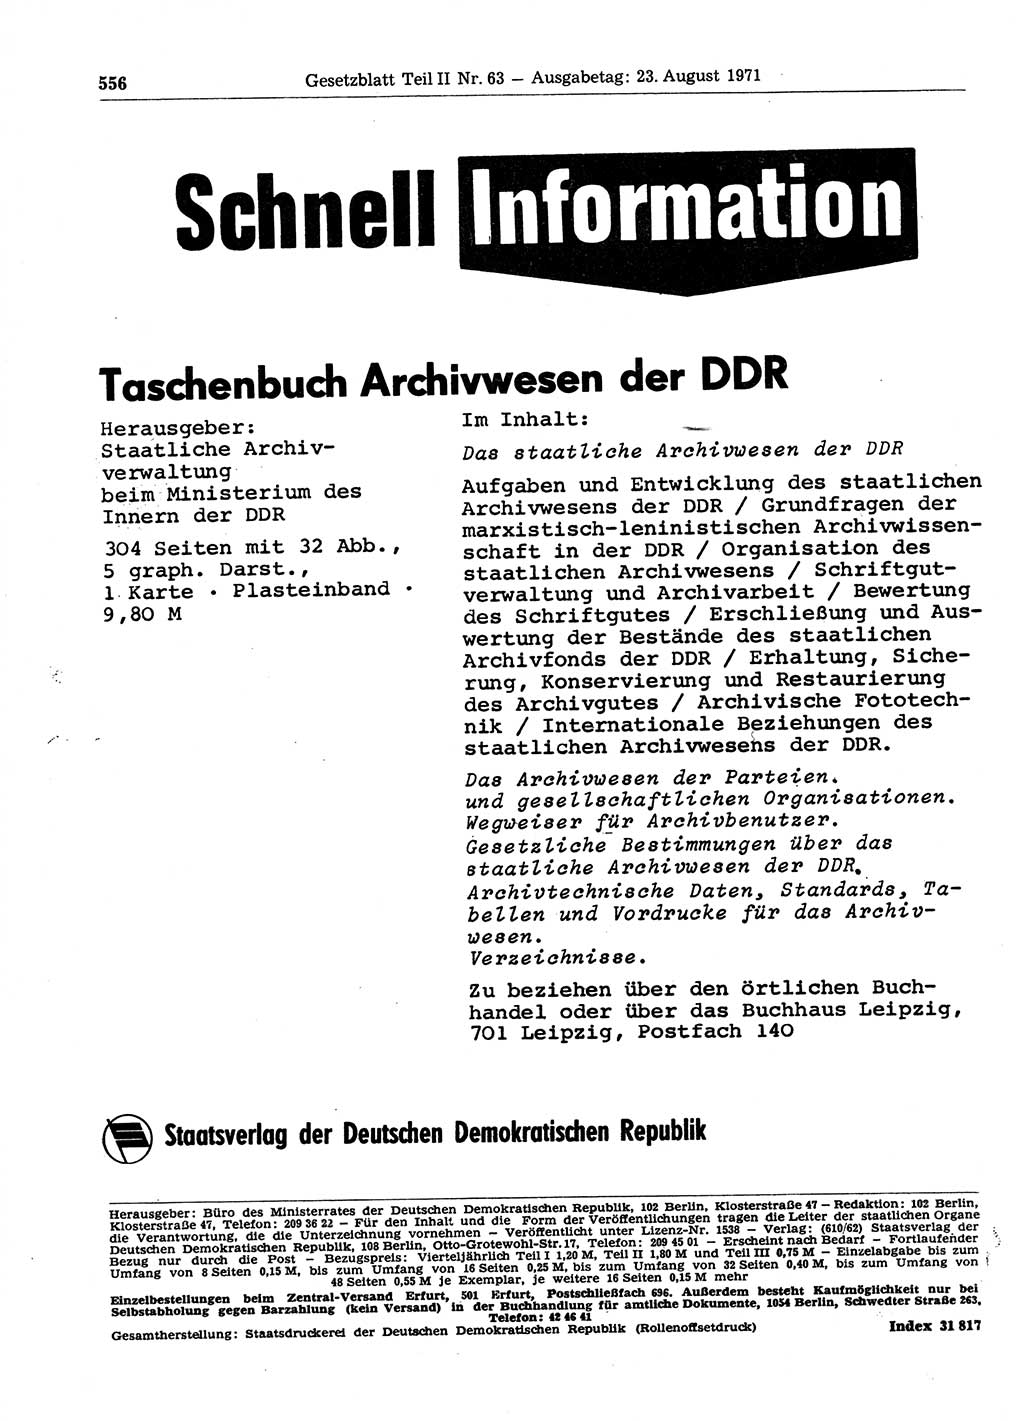 Gesetzblatt (GBl.) der Deutschen Demokratischen Republik (DDR) Teil ⅠⅠ 1971, Seite 556 (GBl. DDR ⅠⅠ 1971, S. 556)